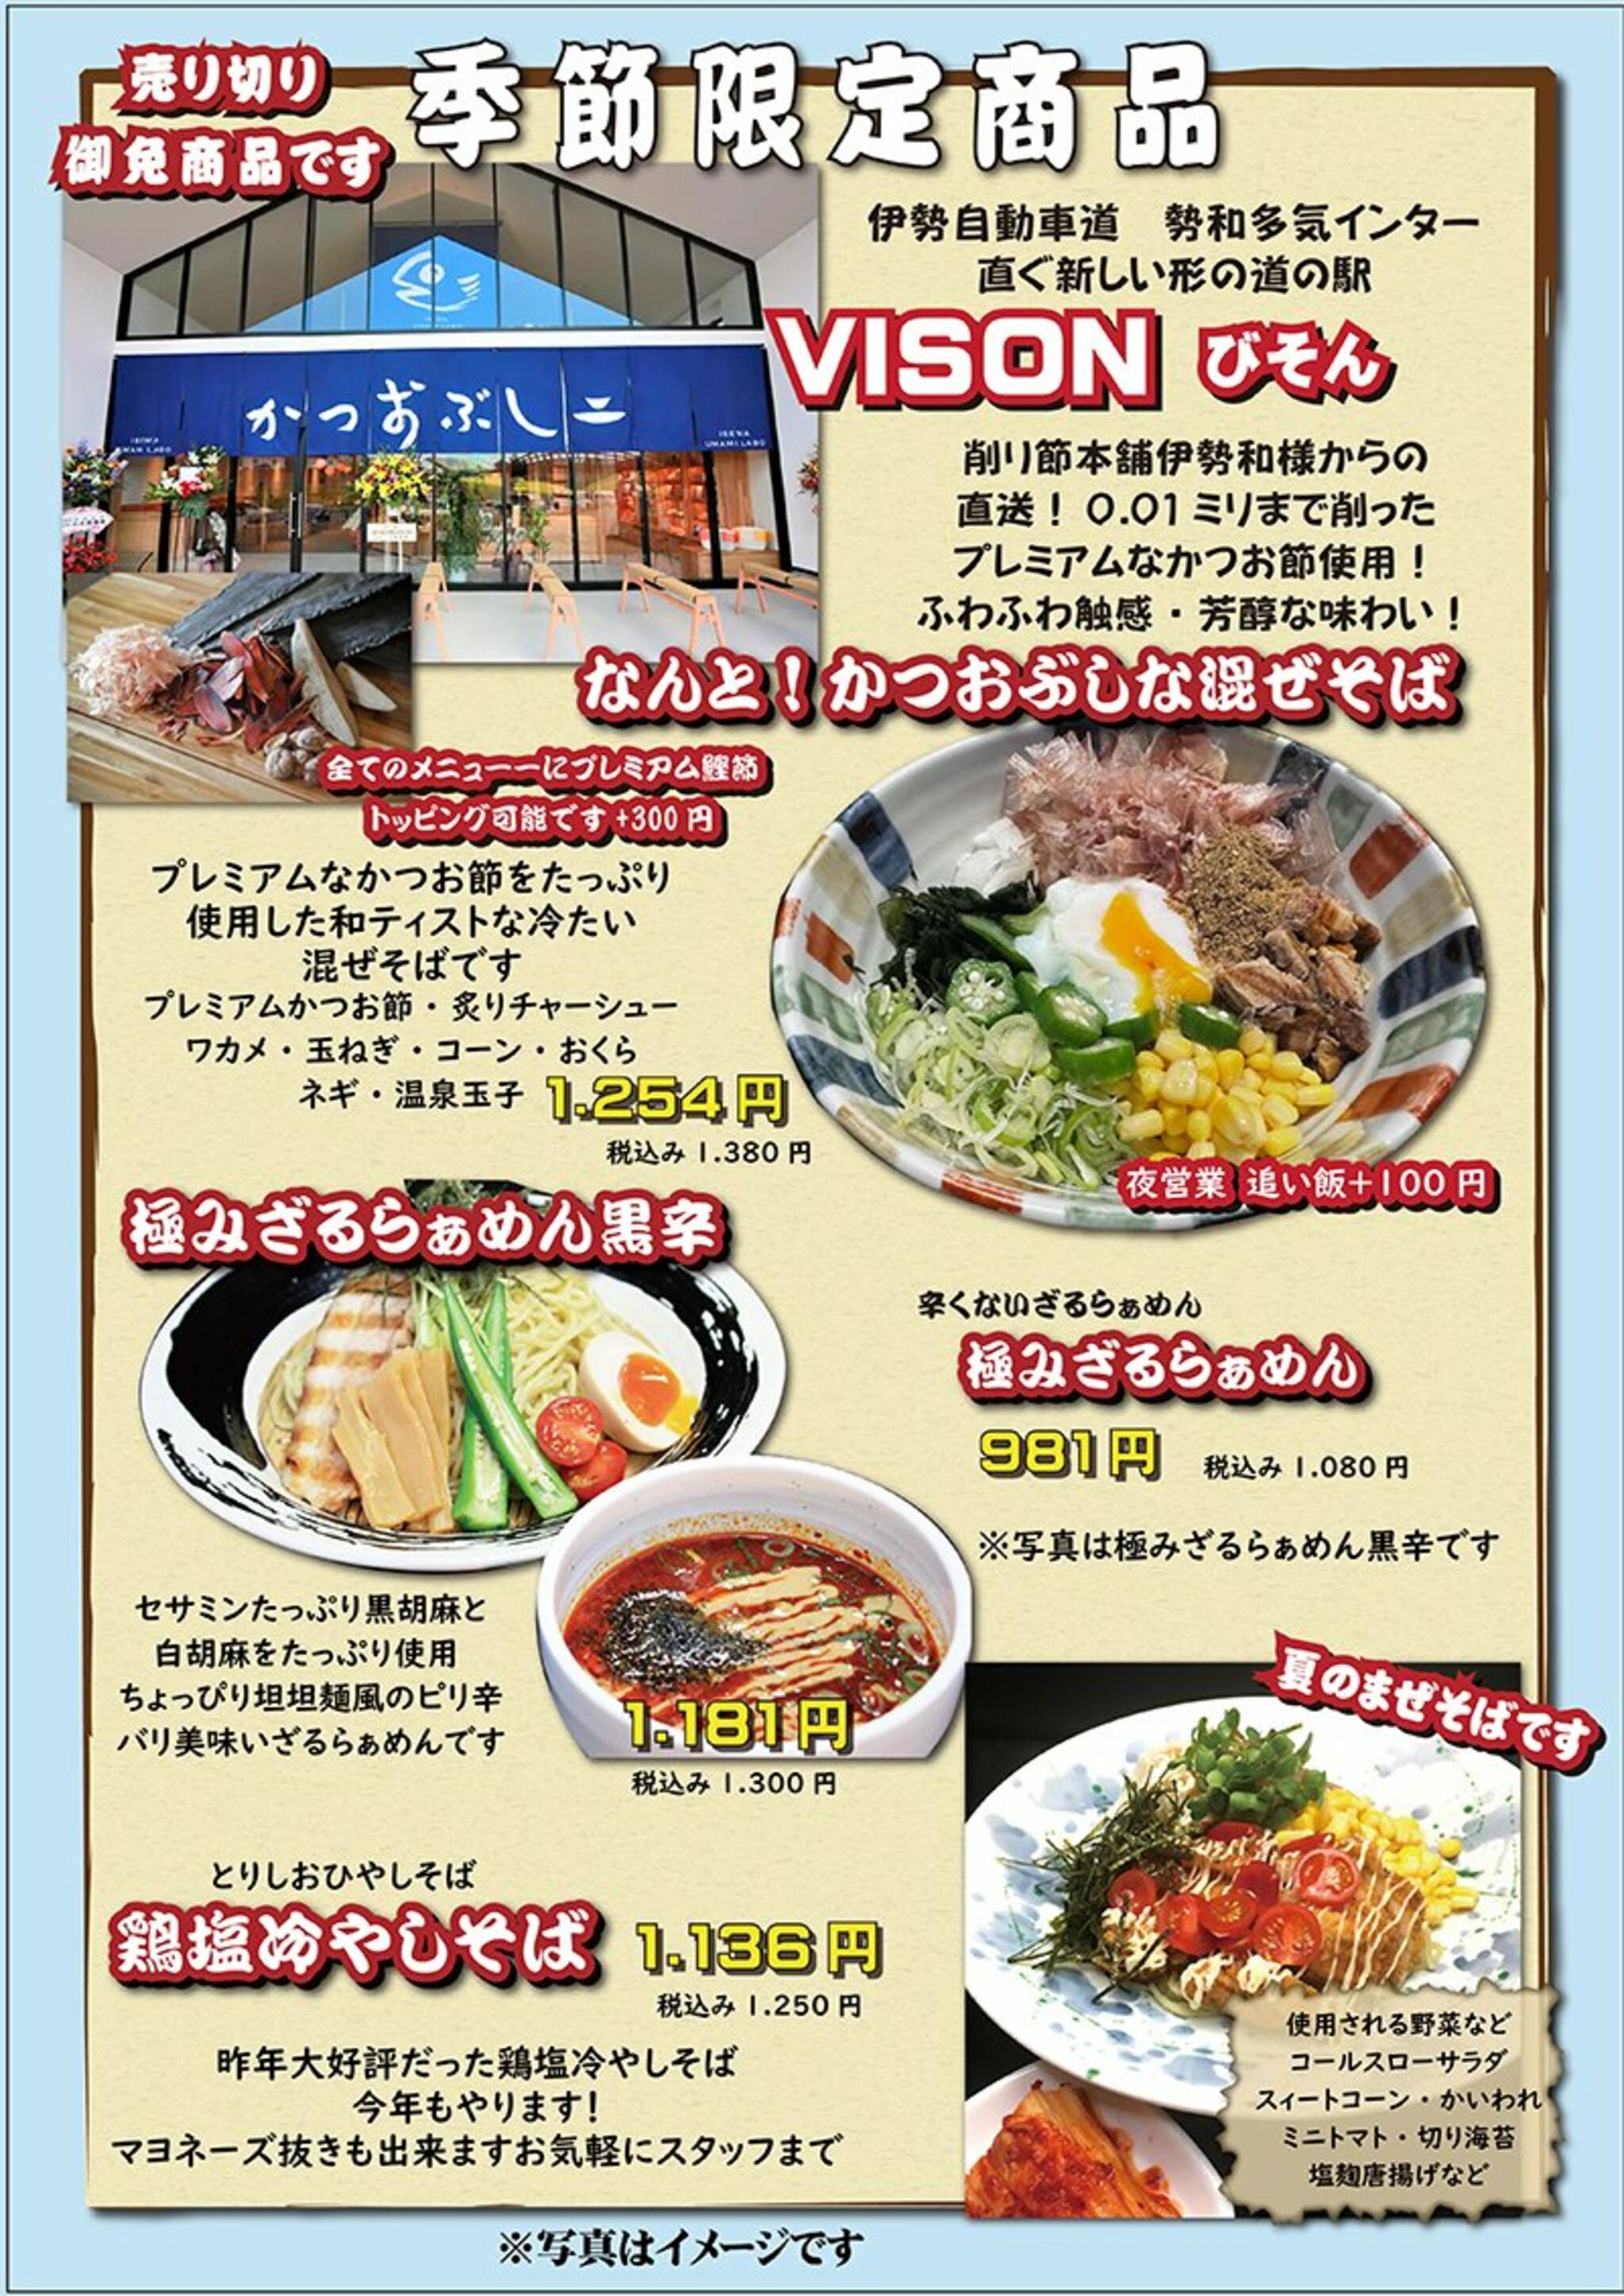 つけ麺道一貫からのお知らせ(季節限定メニュー6月12日より発売開始)に関する写真